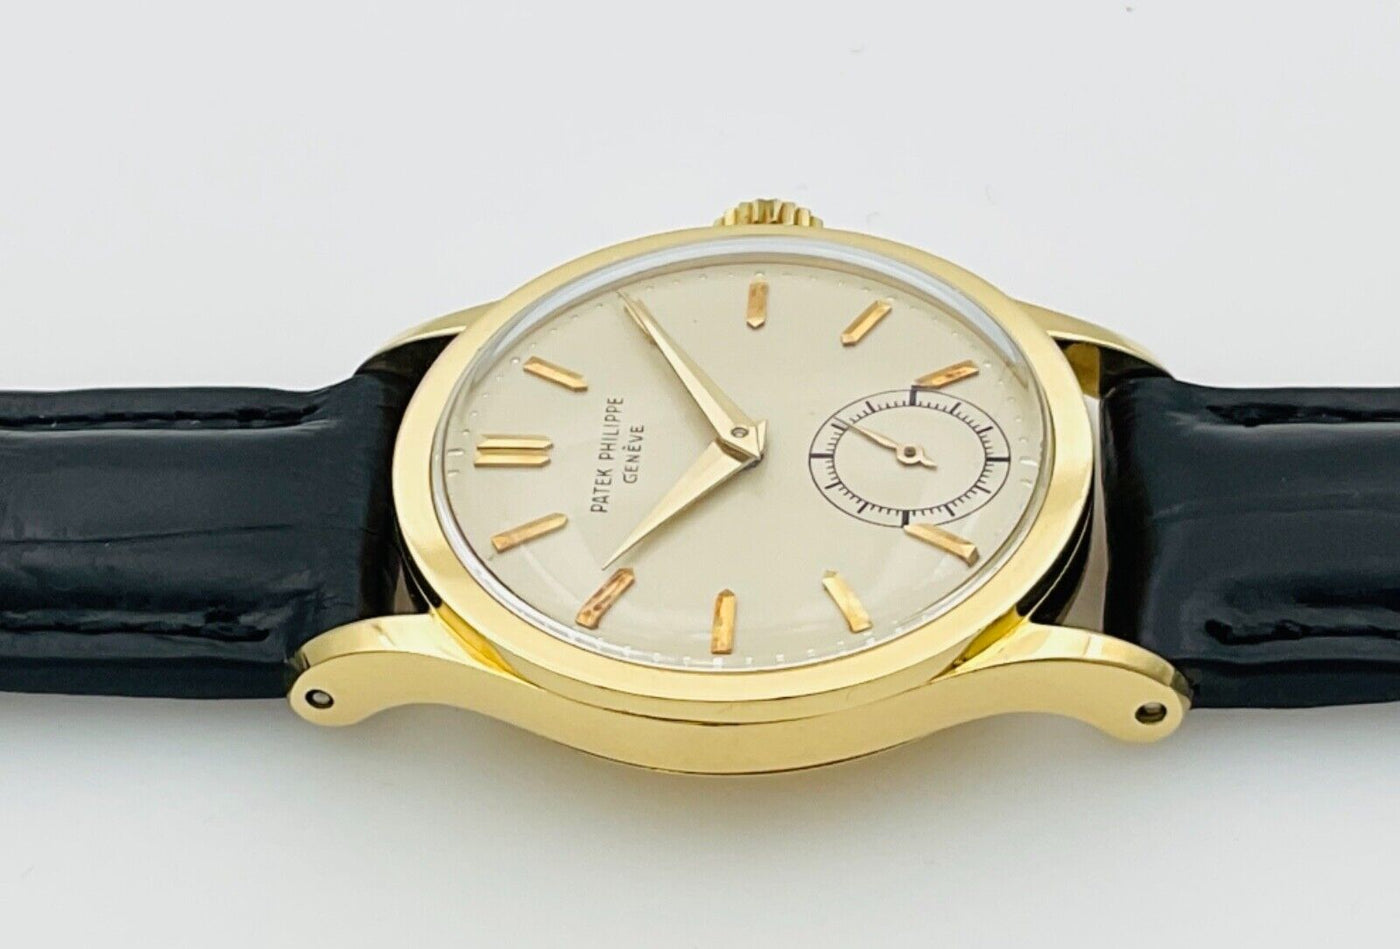 パテック・フィリップメンズ腕時計 ヴィンテージ カラトラバ96J 18Kイエローゴールド手巻き 1954年